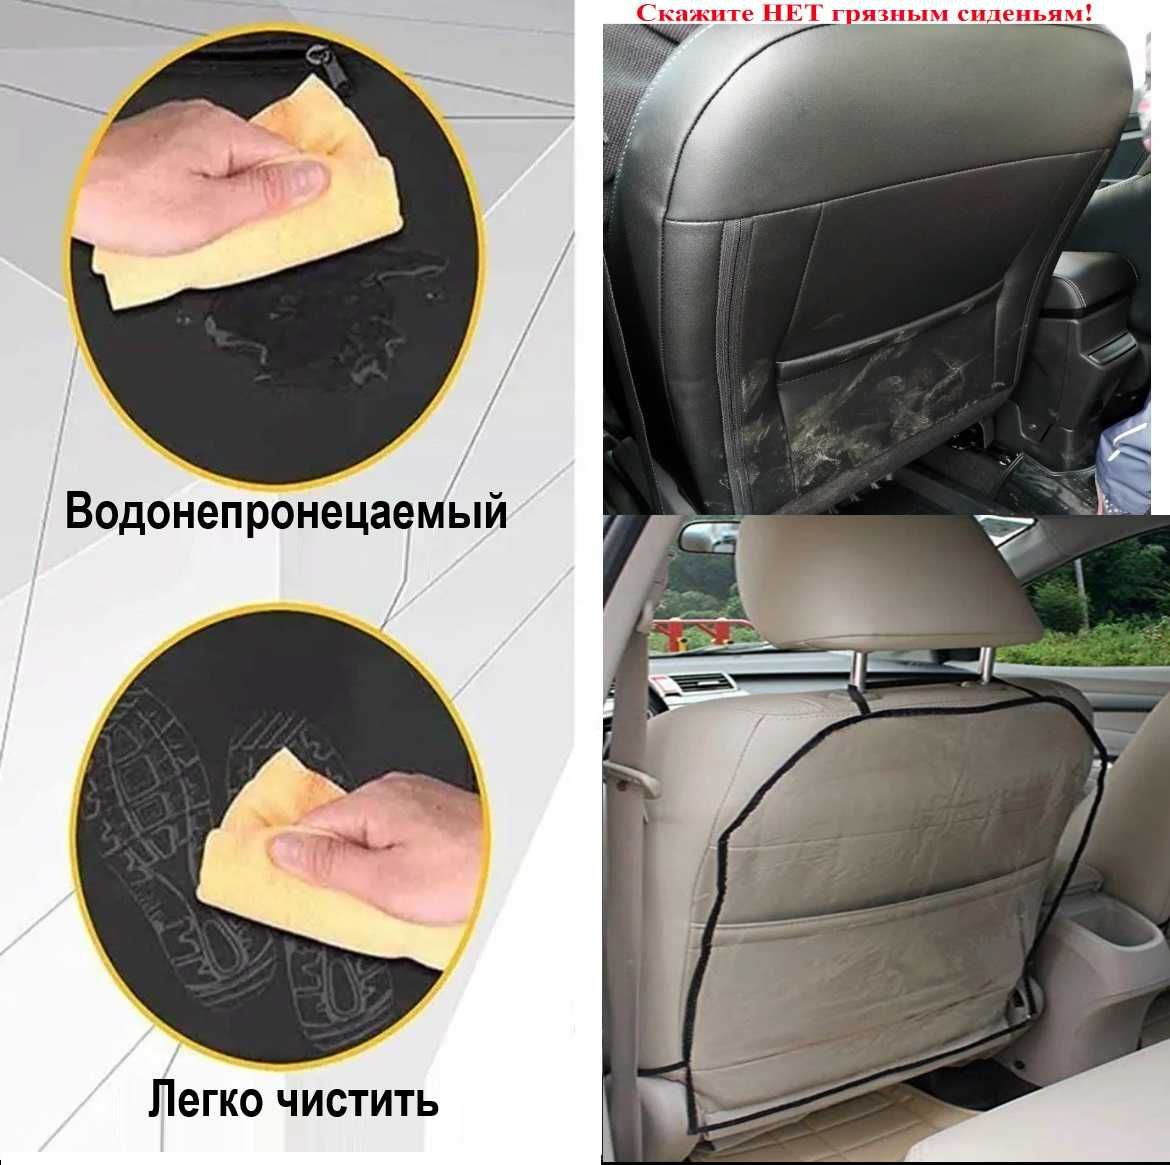 Защита от грязи-накидка на спинку сиденья автомобиля, 65,5*43,5. 1 шт